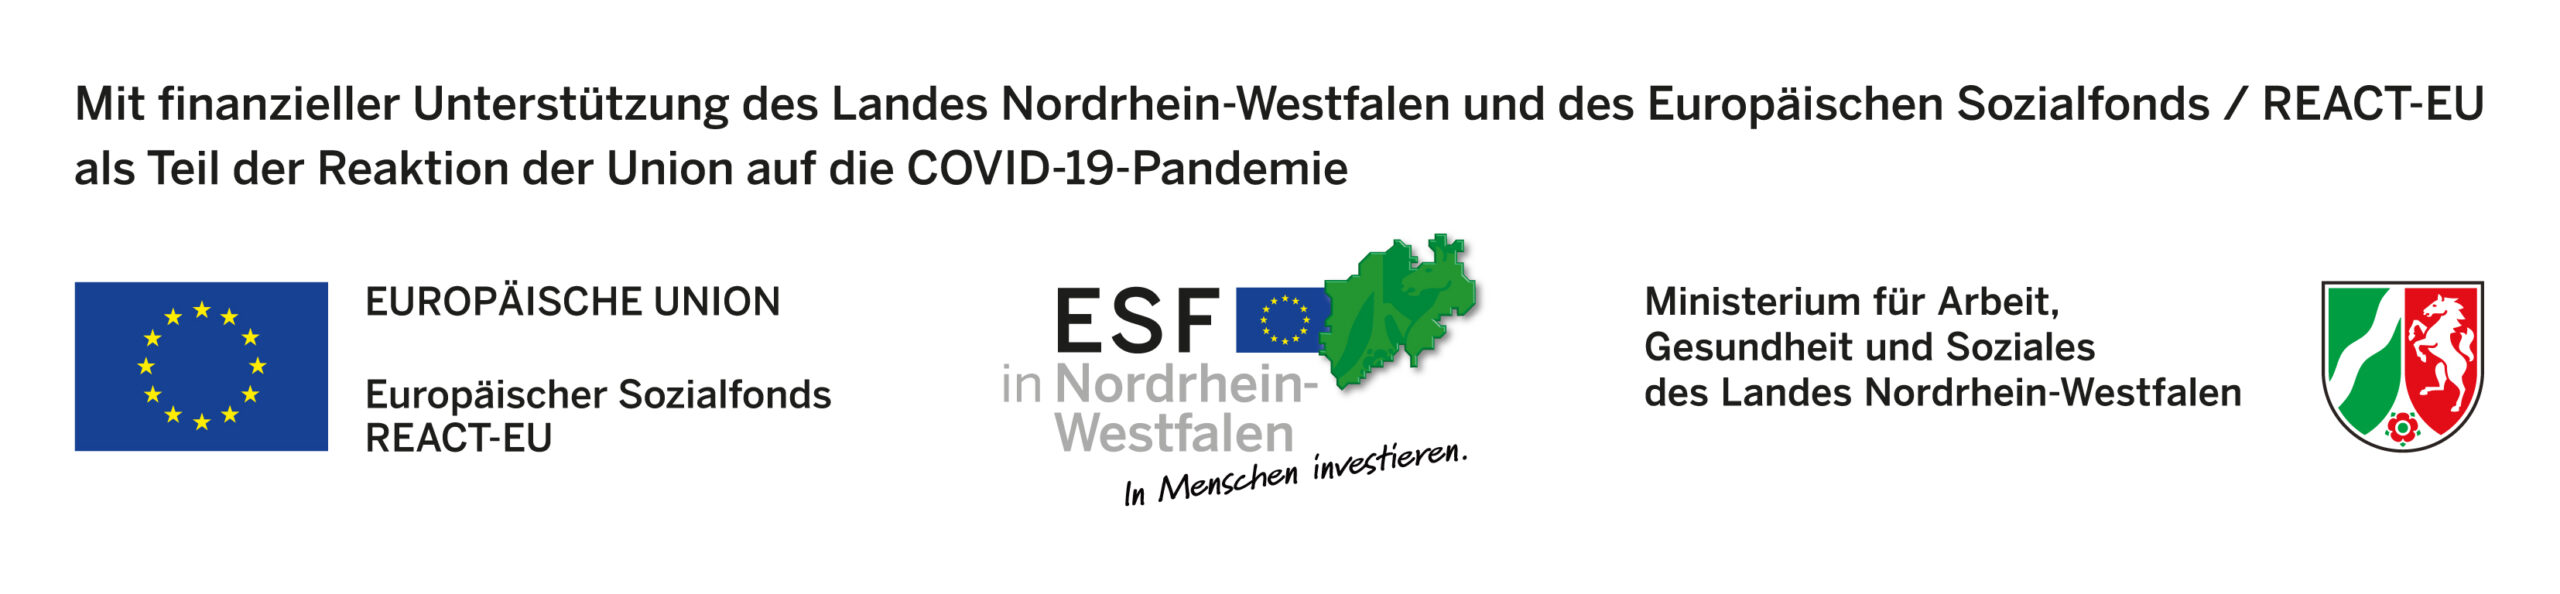 Europäische Sozialfonds in Nordrhein-Westfalen fördert hier.